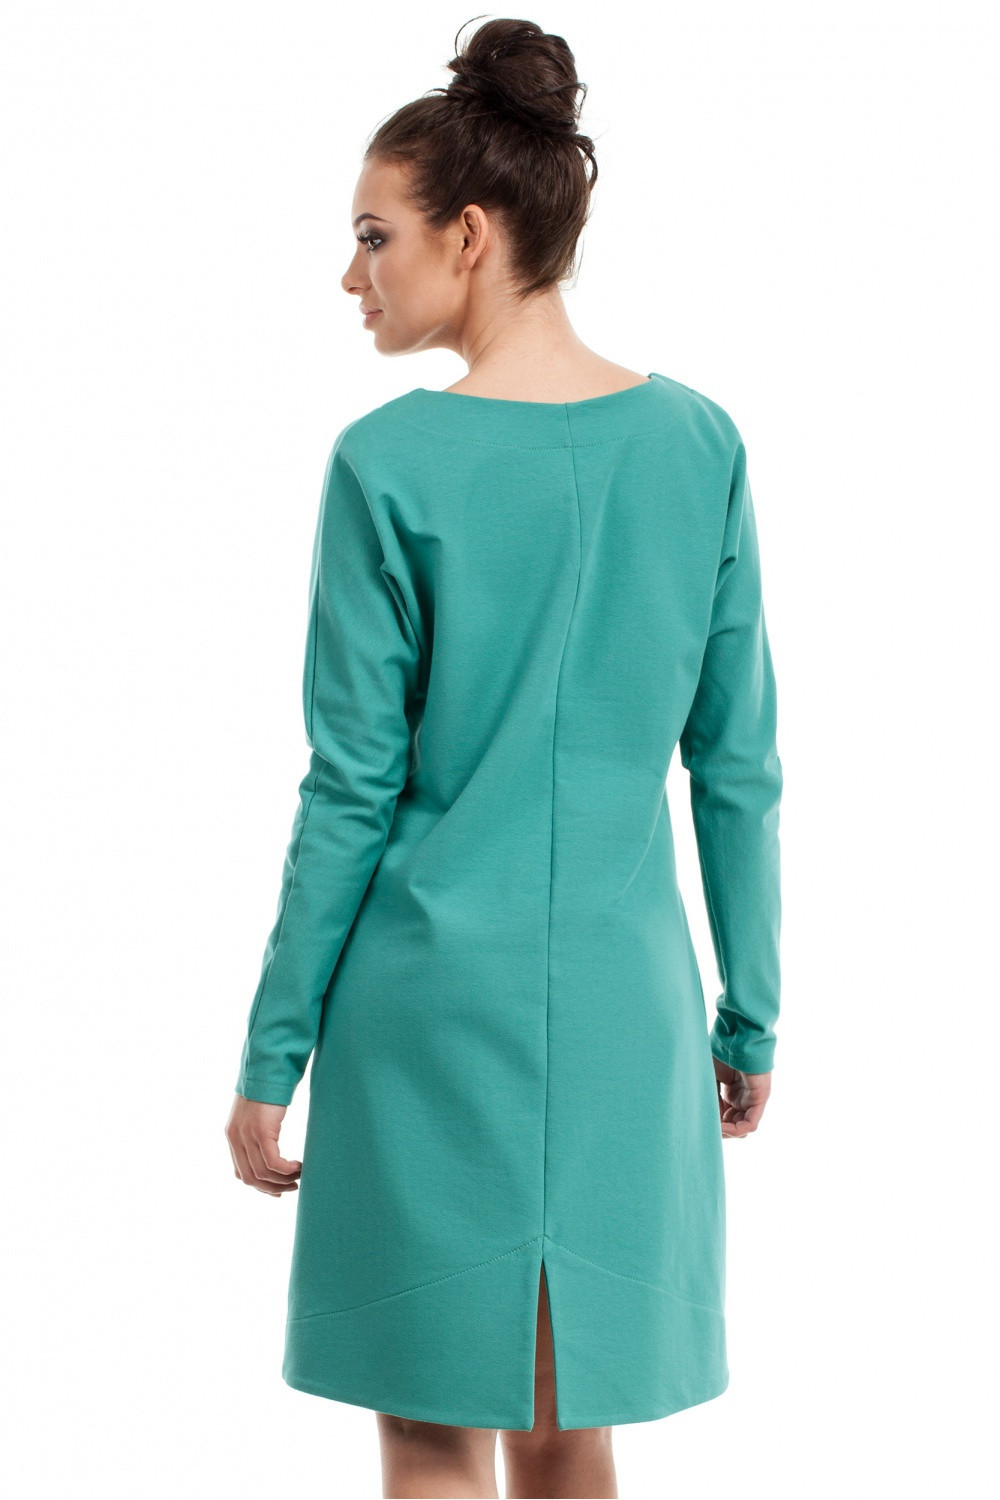 Dámské šaty model 14475016 zelená S/M - BeWear